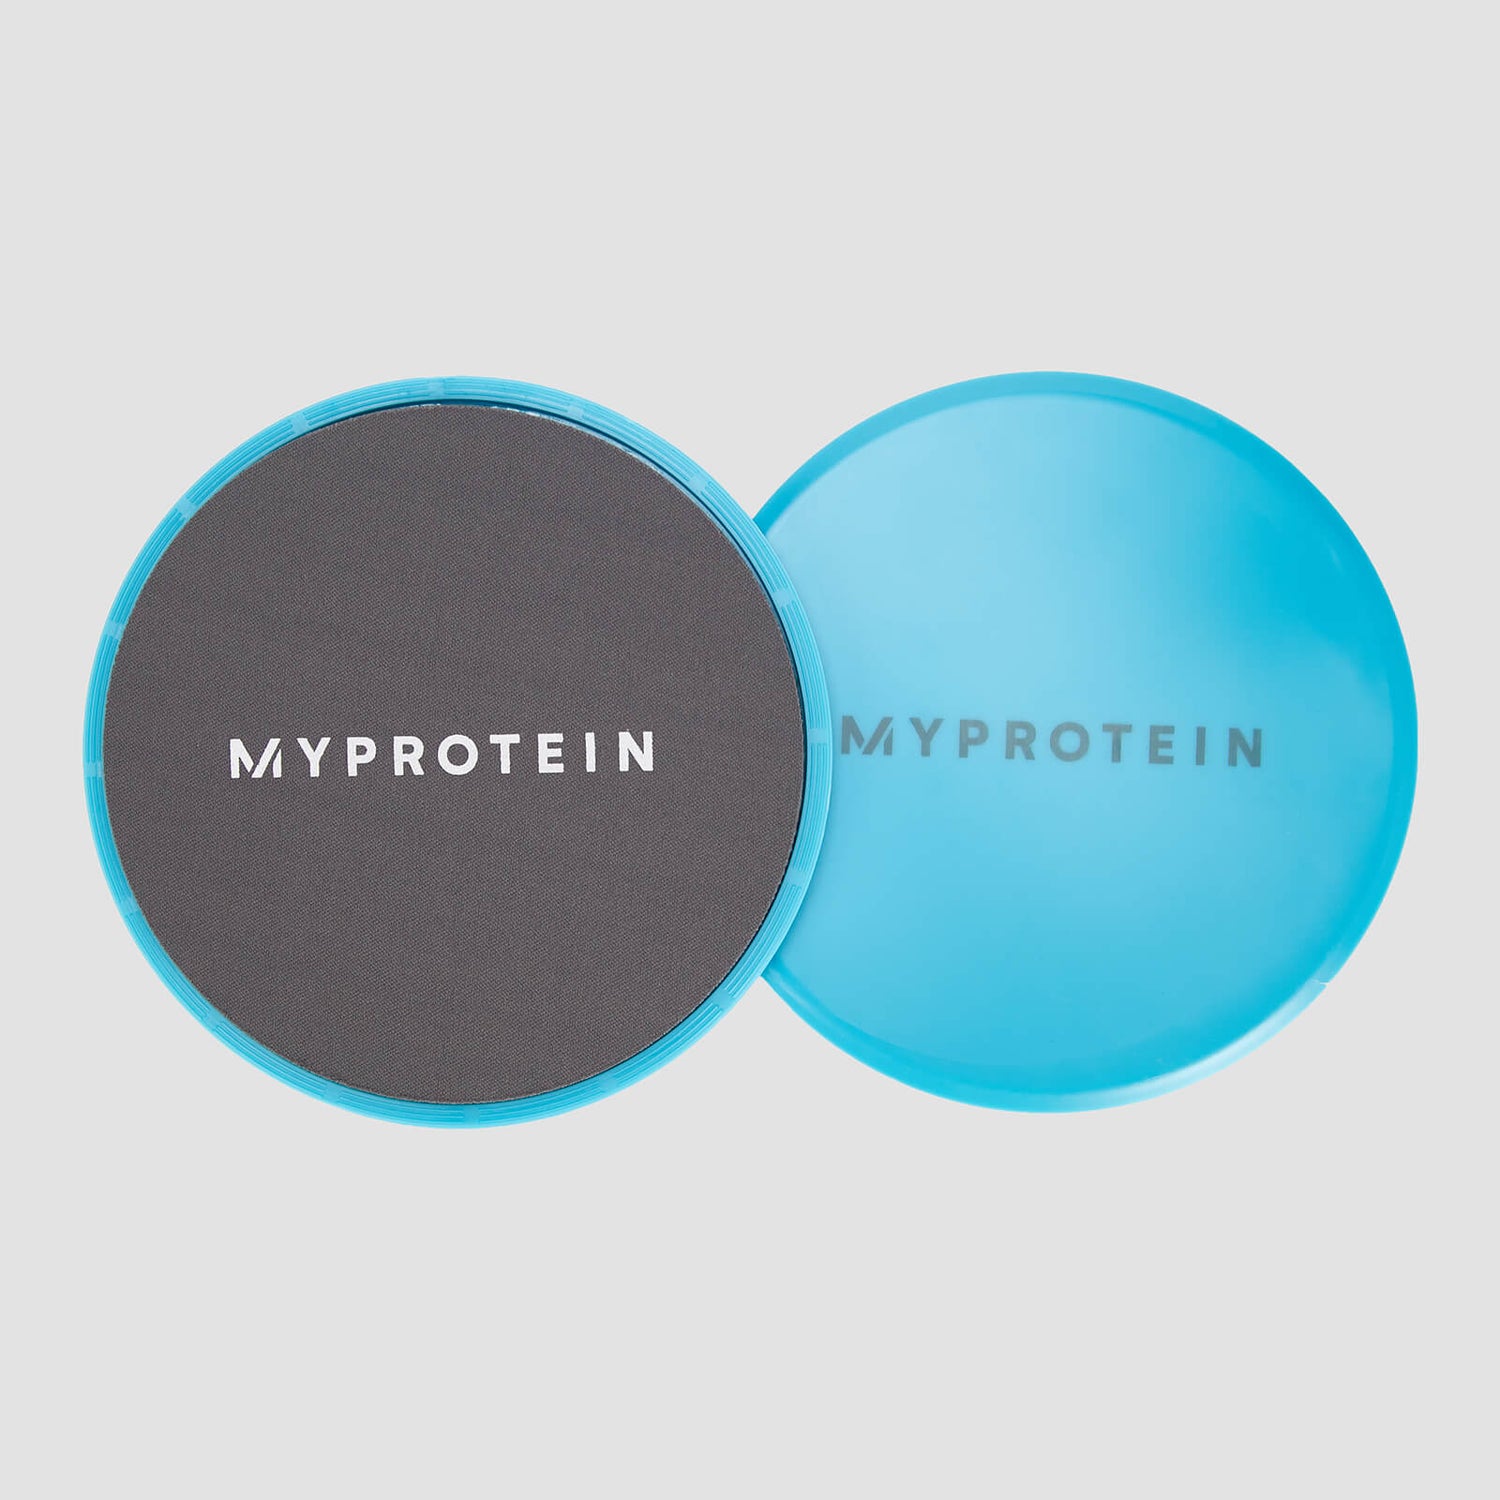 Myprotein-liukulevyt - Harmaa